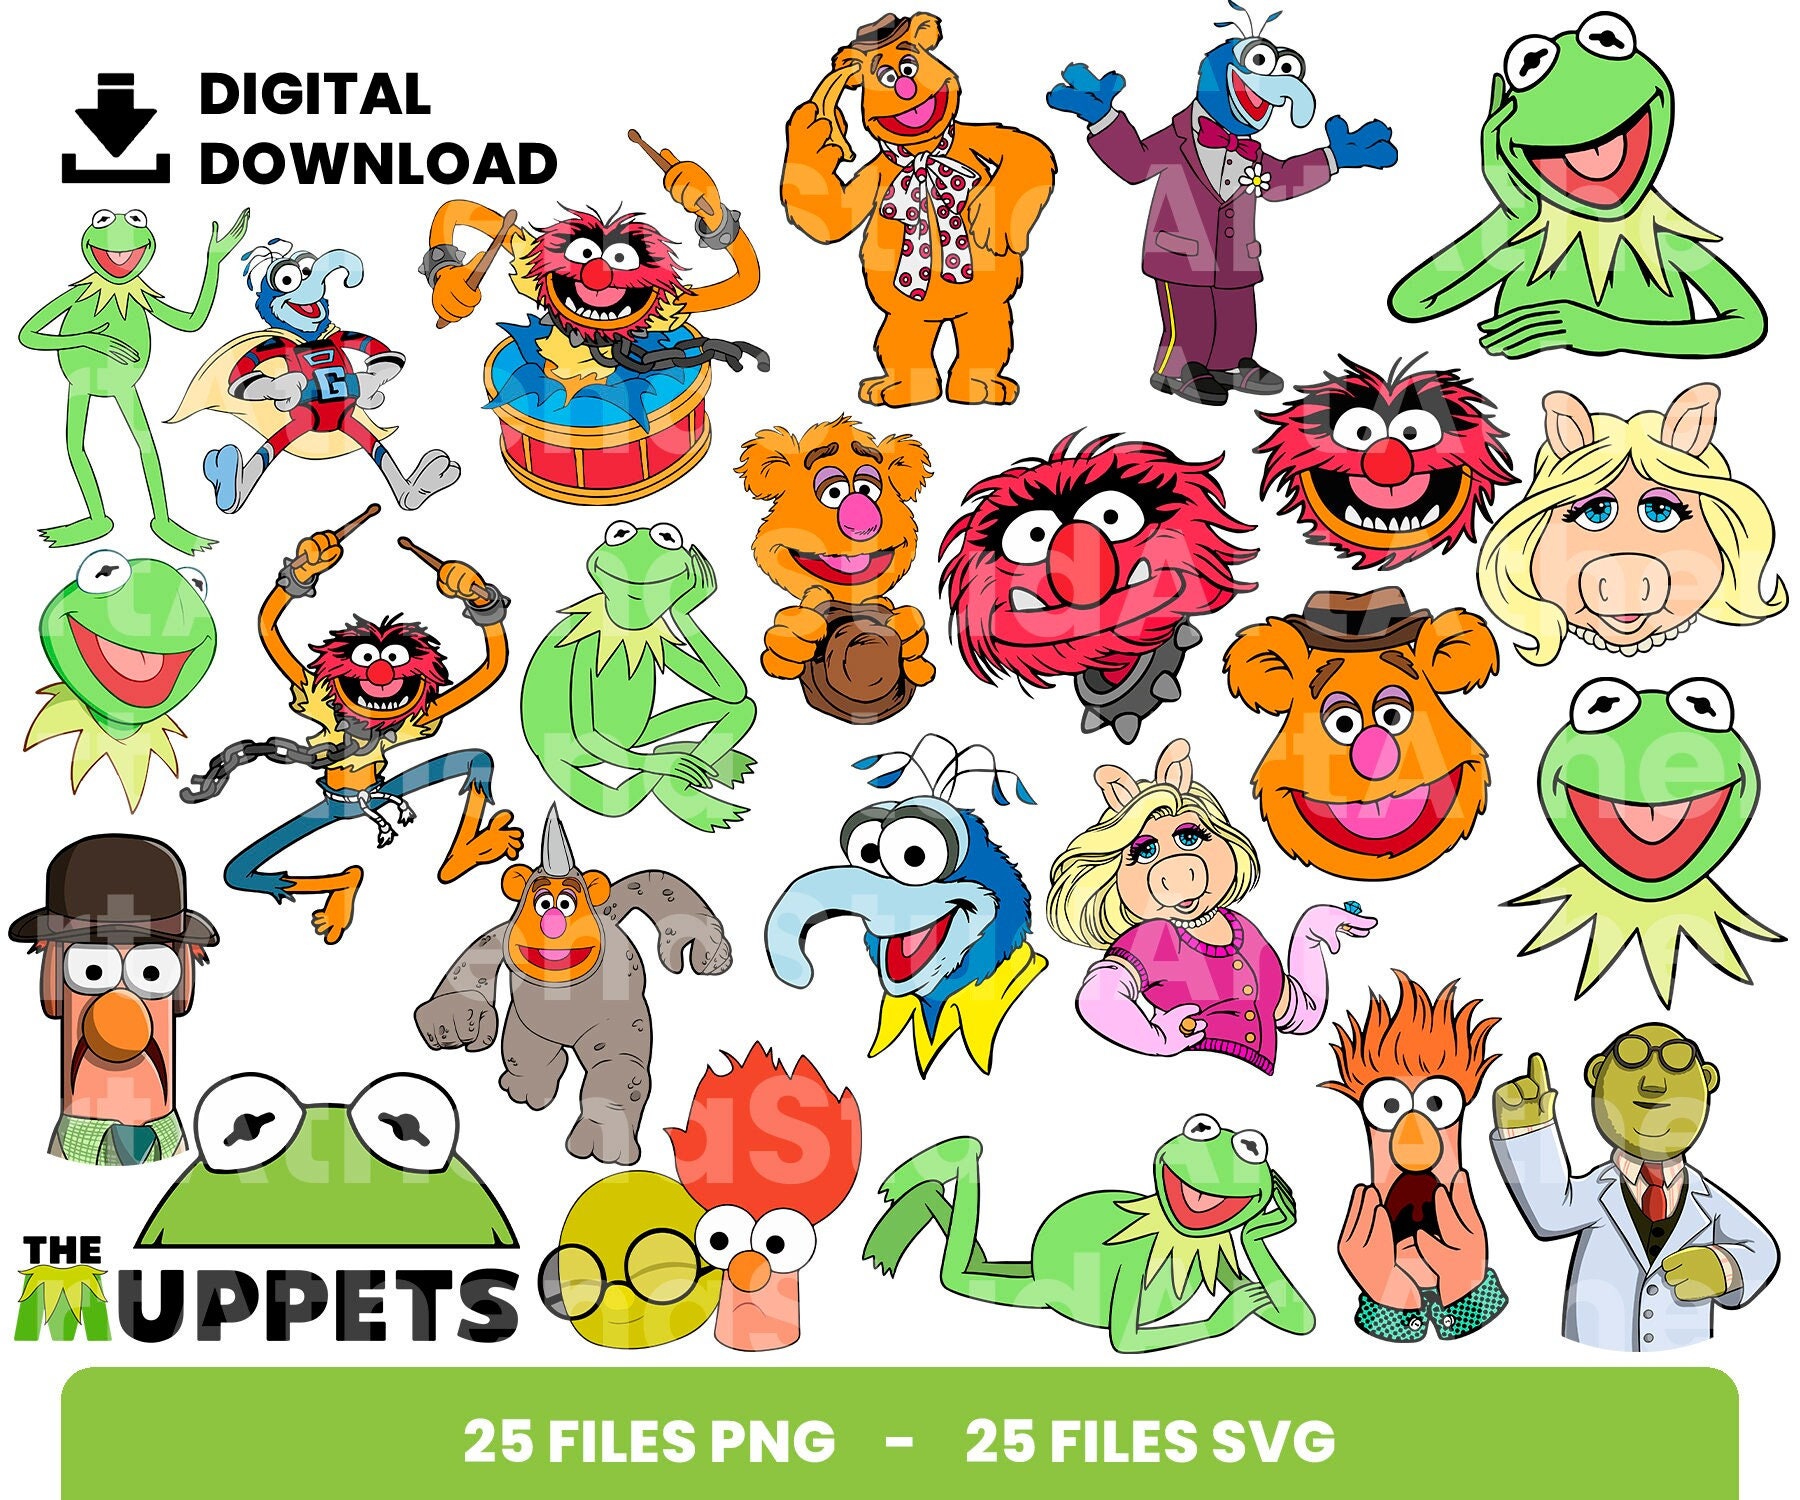 Beaker Meep Meep Meep Muppets Inspired Fake Album Artwork 